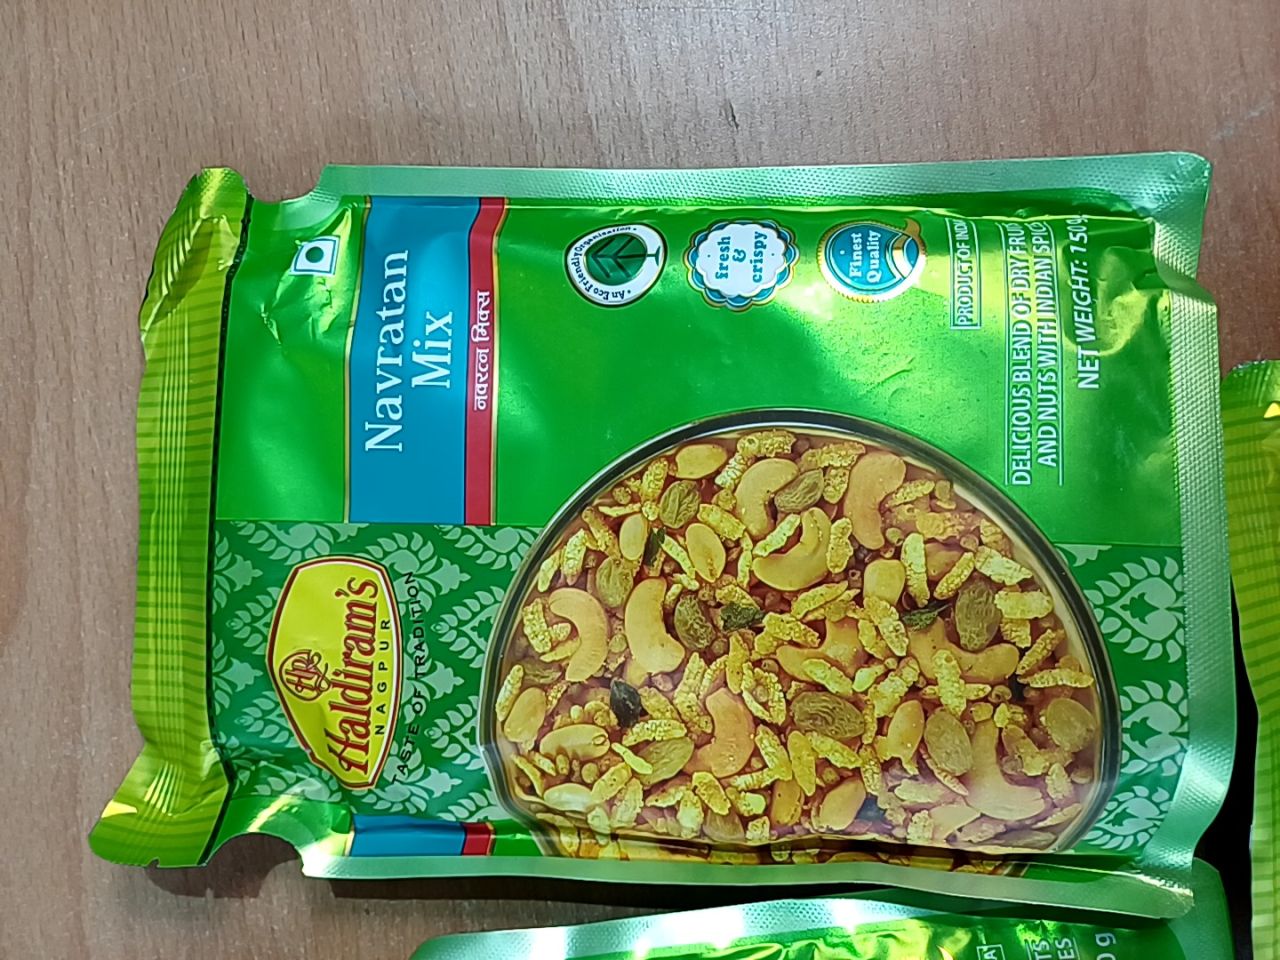 Směs sušených ořechů, čočky, indické koření haldirams Navratan Mix - 5 ks